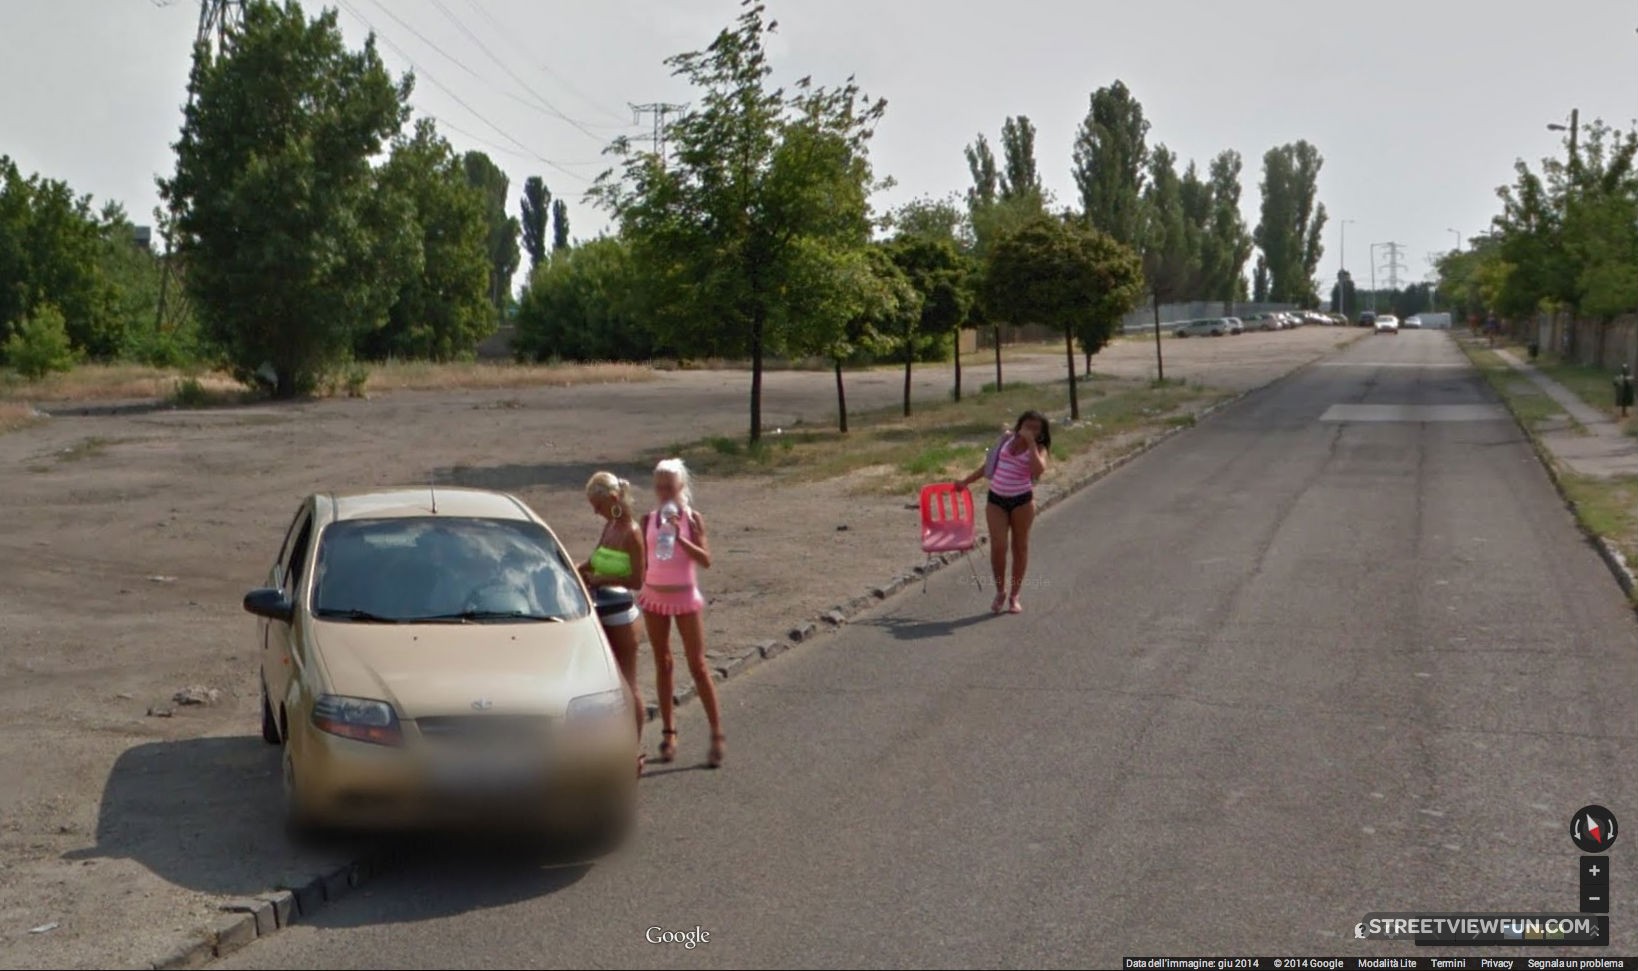 Girls Of Budapest Streetviewfun 